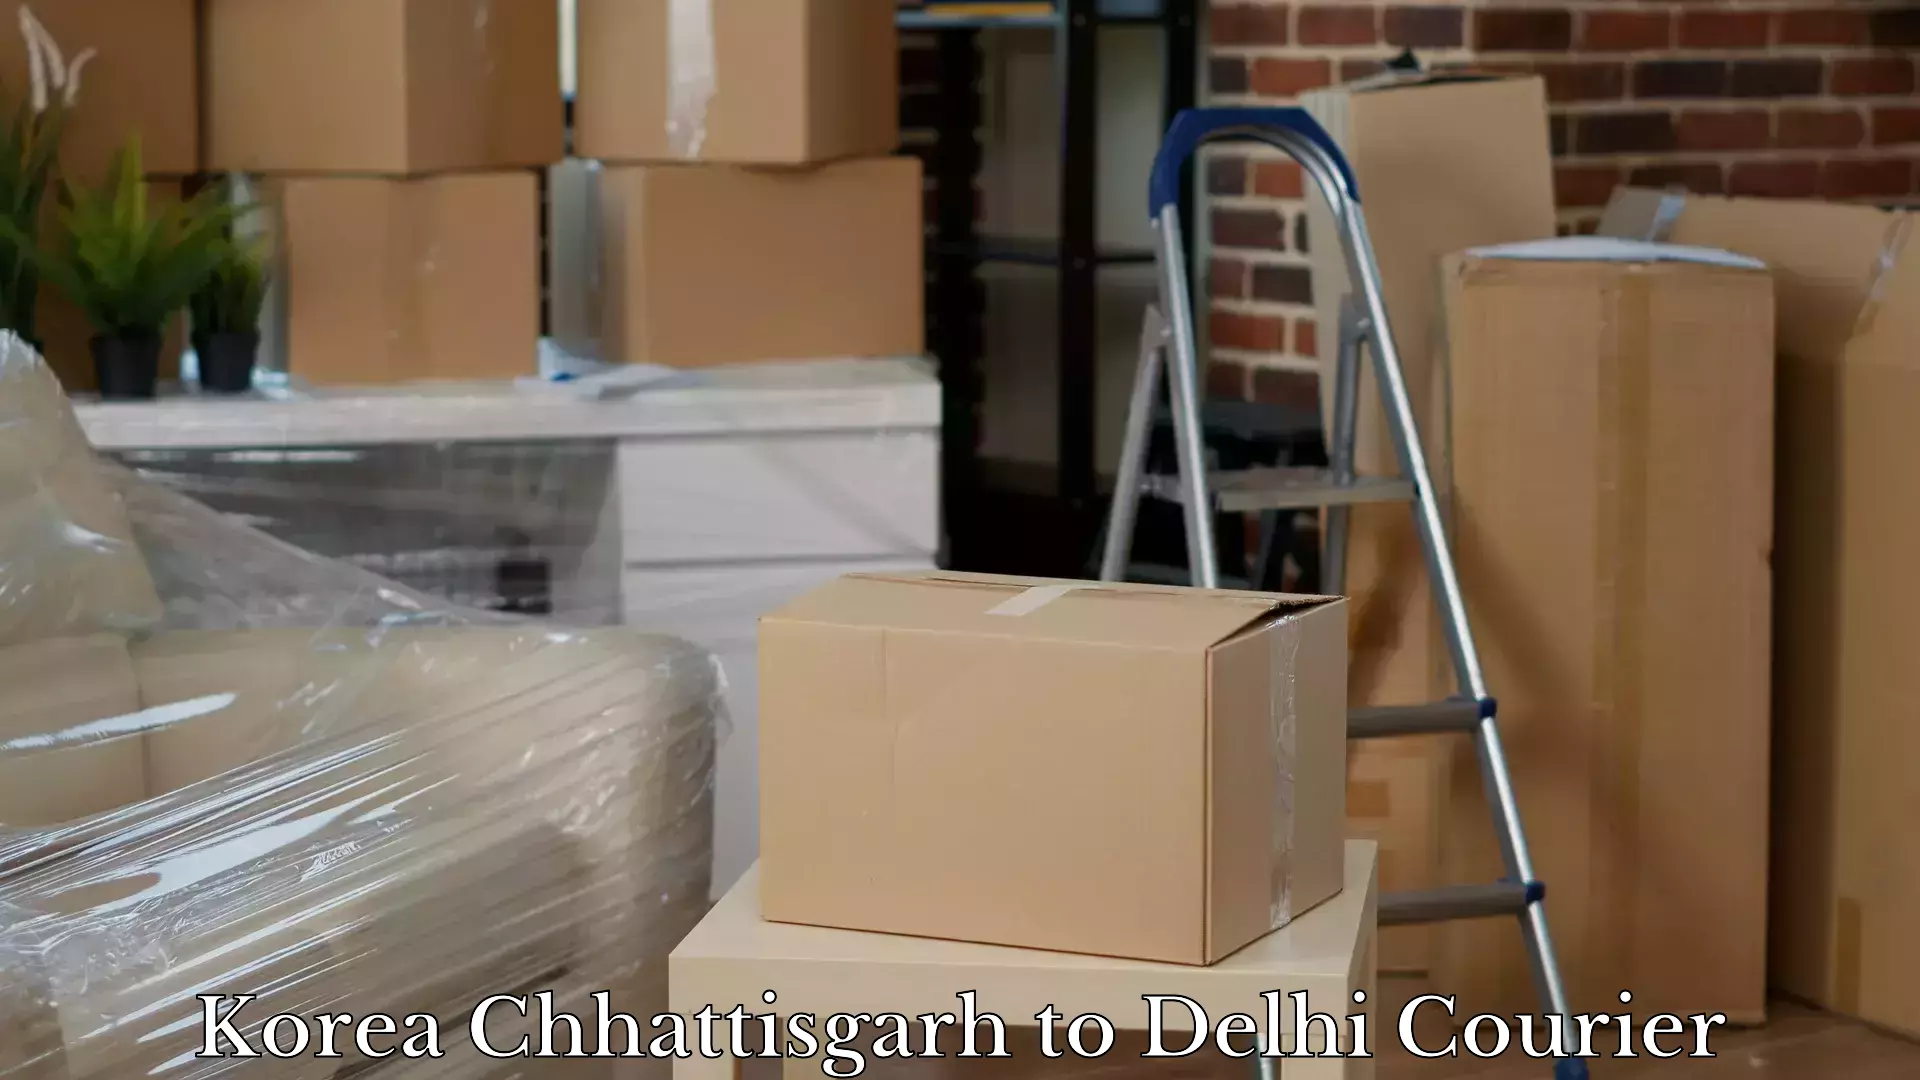 Luggage transfer service Korea Chhattisgarh to Delhi